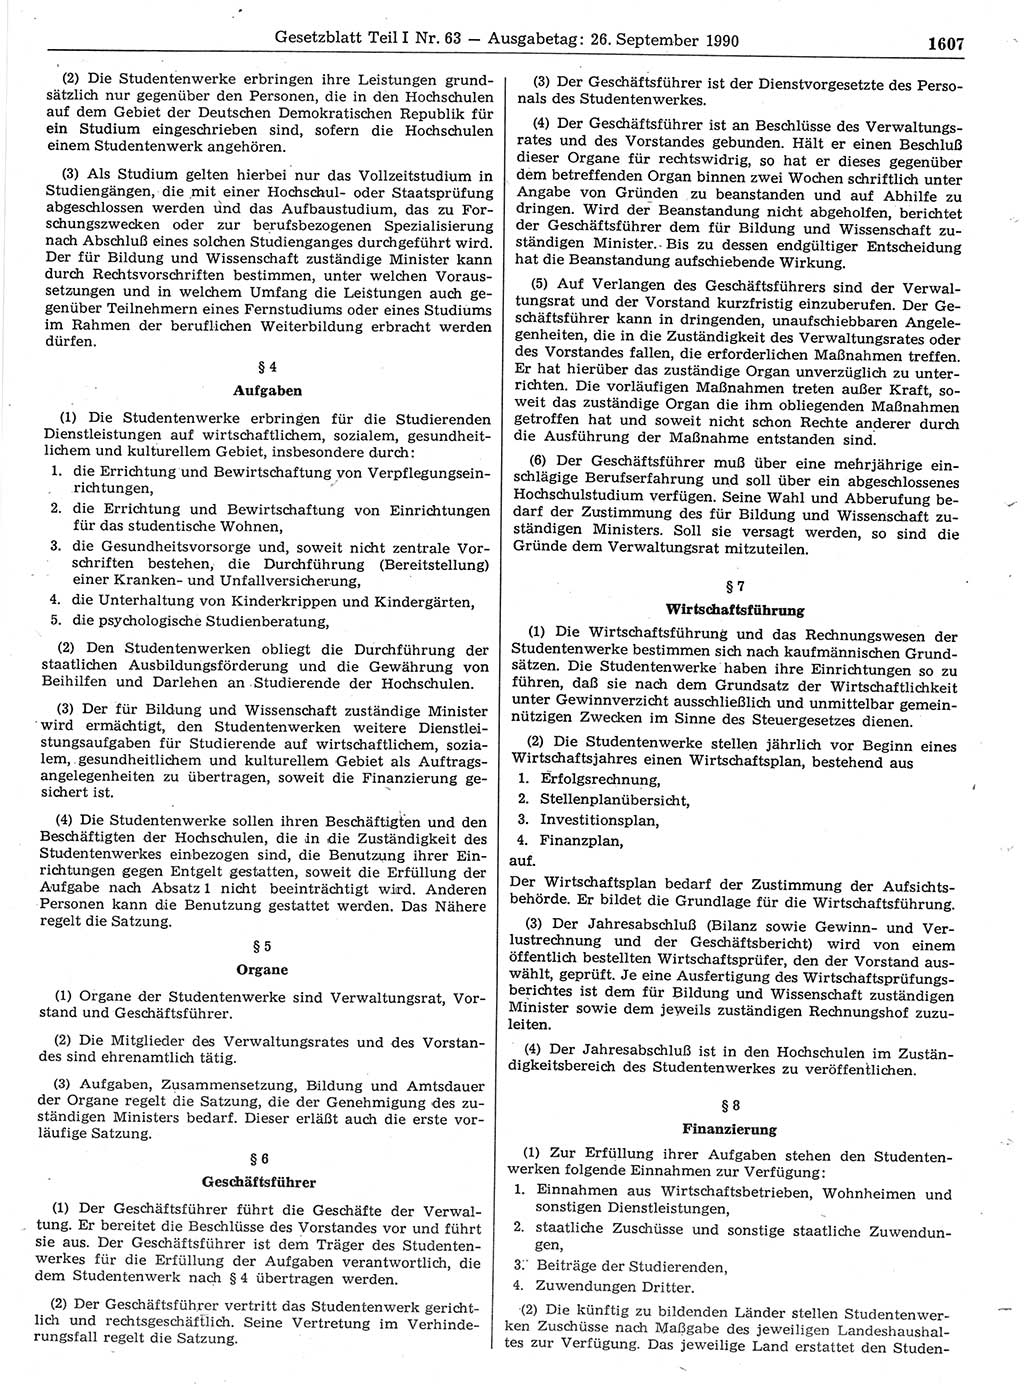 Gesetzblatt (GBl.) der Deutschen Demokratischen Republik (DDR) Teil Ⅰ 1990, Seite 1609 (GBl. DDR Ⅰ 1990, S. 1609)